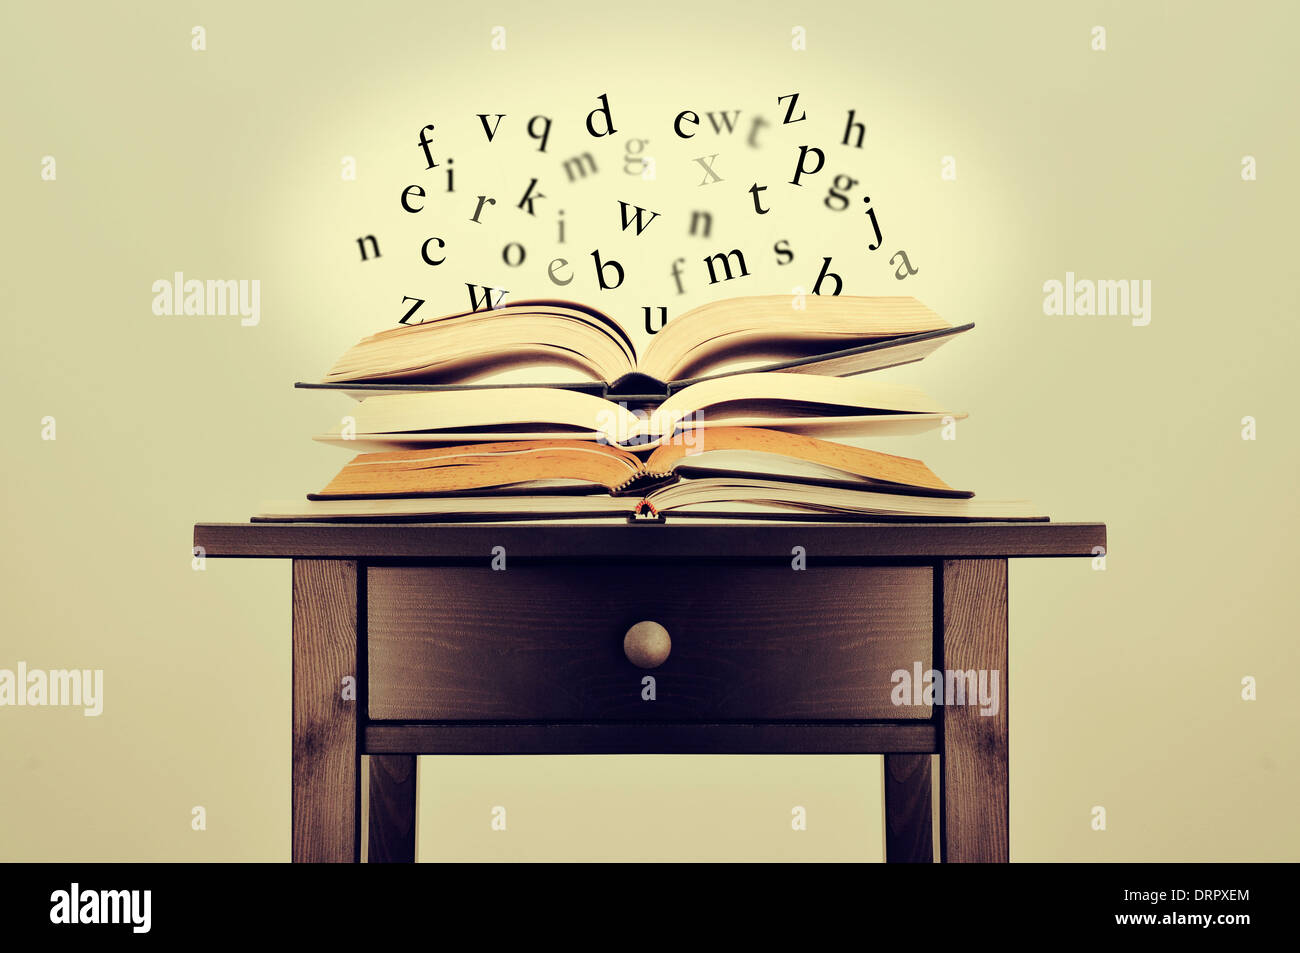 Une pile de livres et de lettres flottant au-dessus de eux sur un bureau symbolisant l'idée de la littérature ou des connaissances Banque D'Images